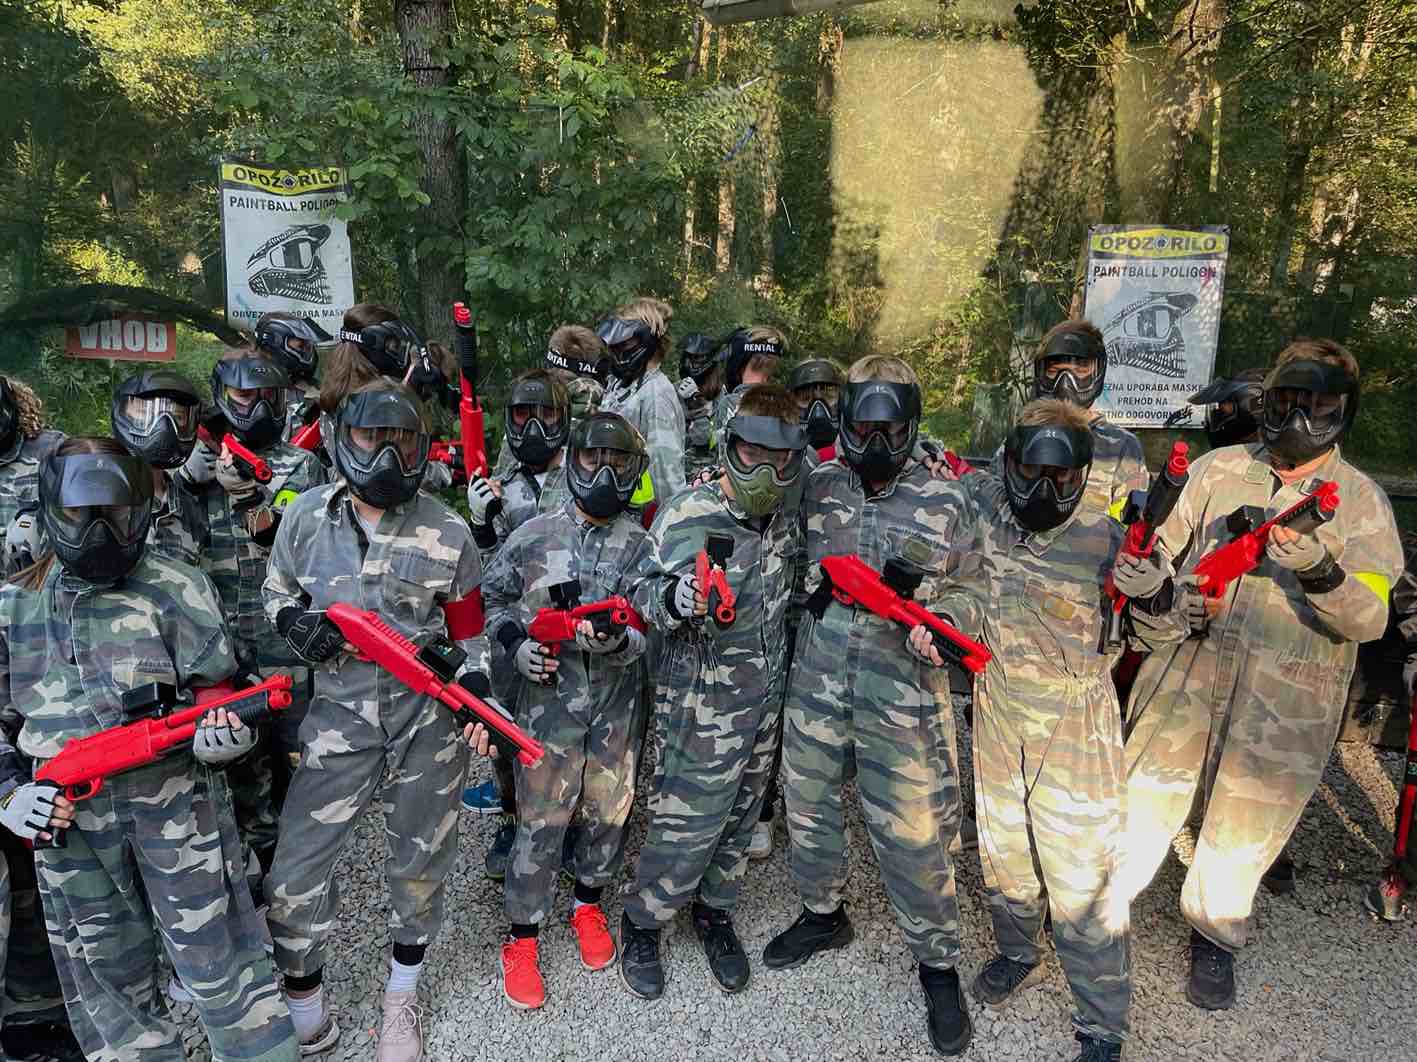 ekipni Paintball za otroke Ljubljana . Prikazana je ekipa otrok v v kamuflažni obleki z zaščitno masko na obrazu in vsi imajo v rokah pištolo za paintball. Pištole so v rdeči barvi.